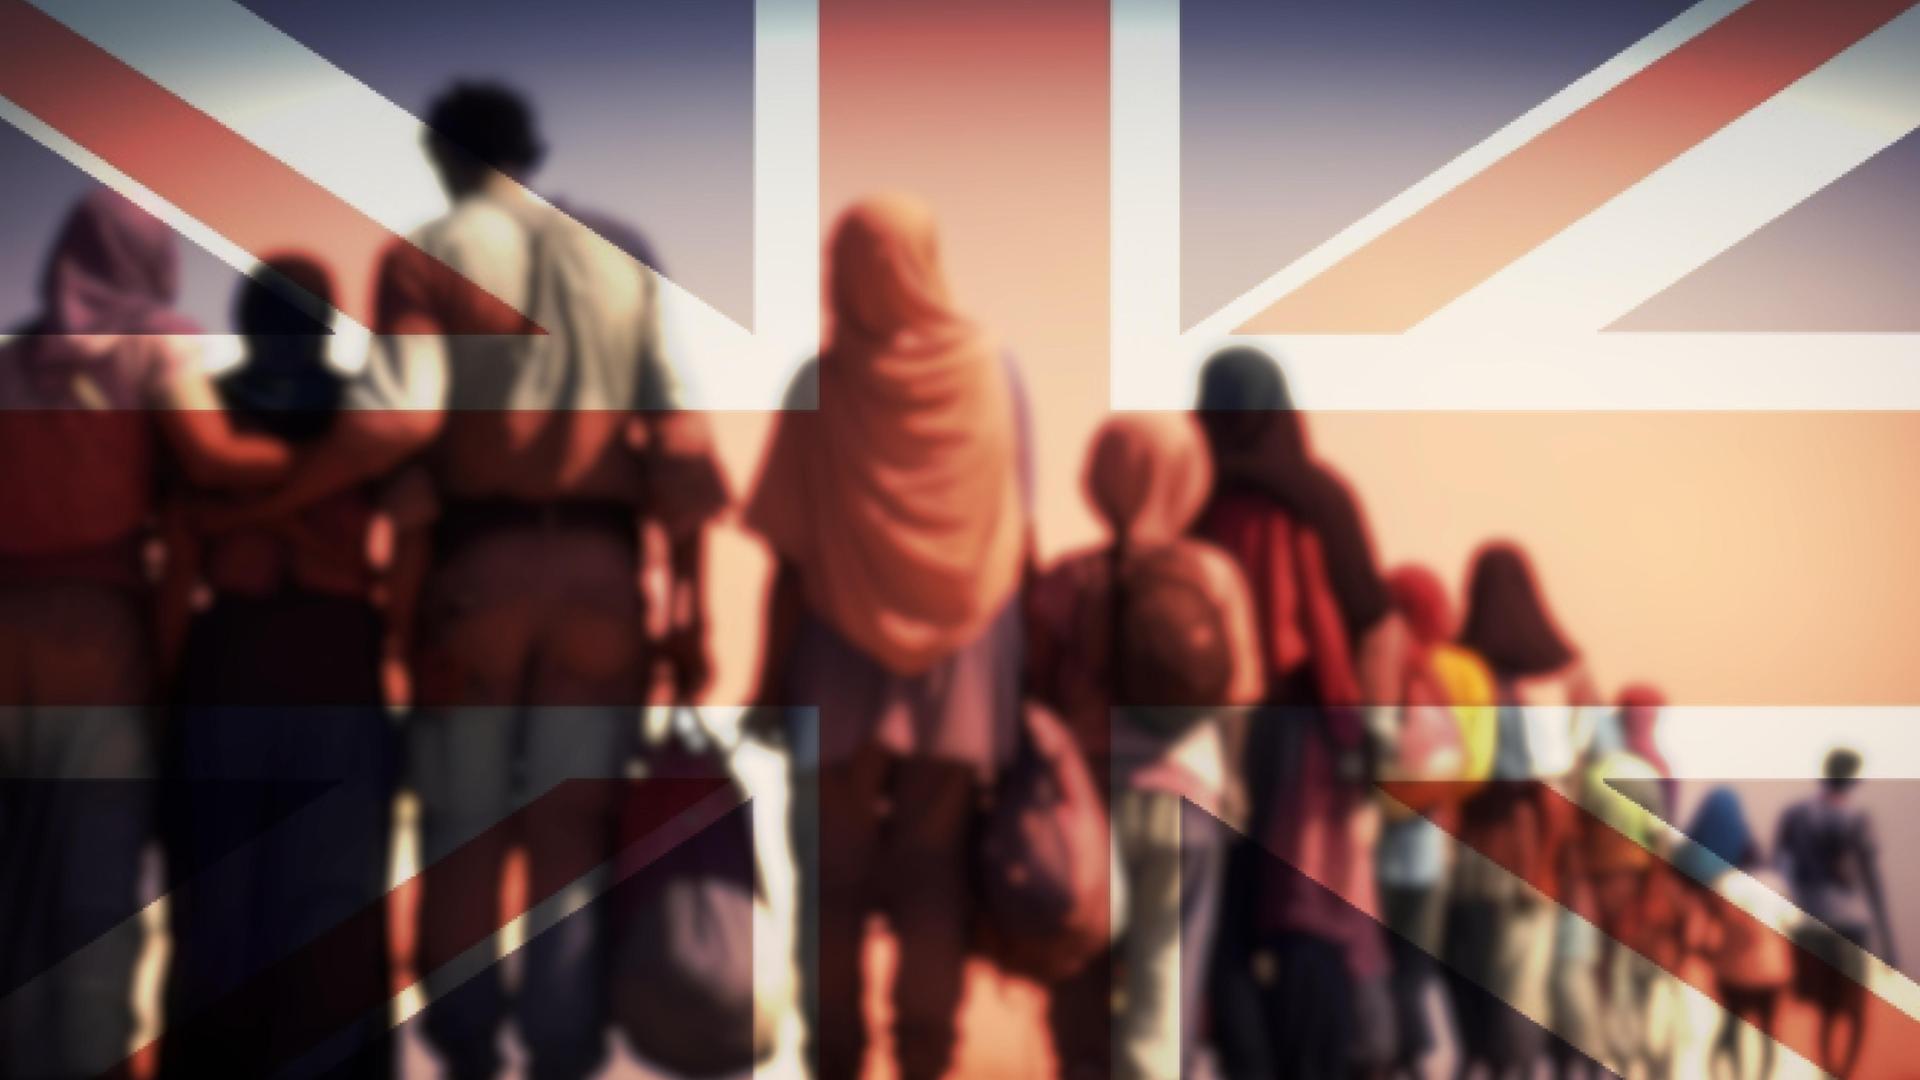 Eine anonym von hinten fotografierte Gruppe, die Migranten darstellen sollen, blicken auf eine große, animierte Flagge Großbritanniens.